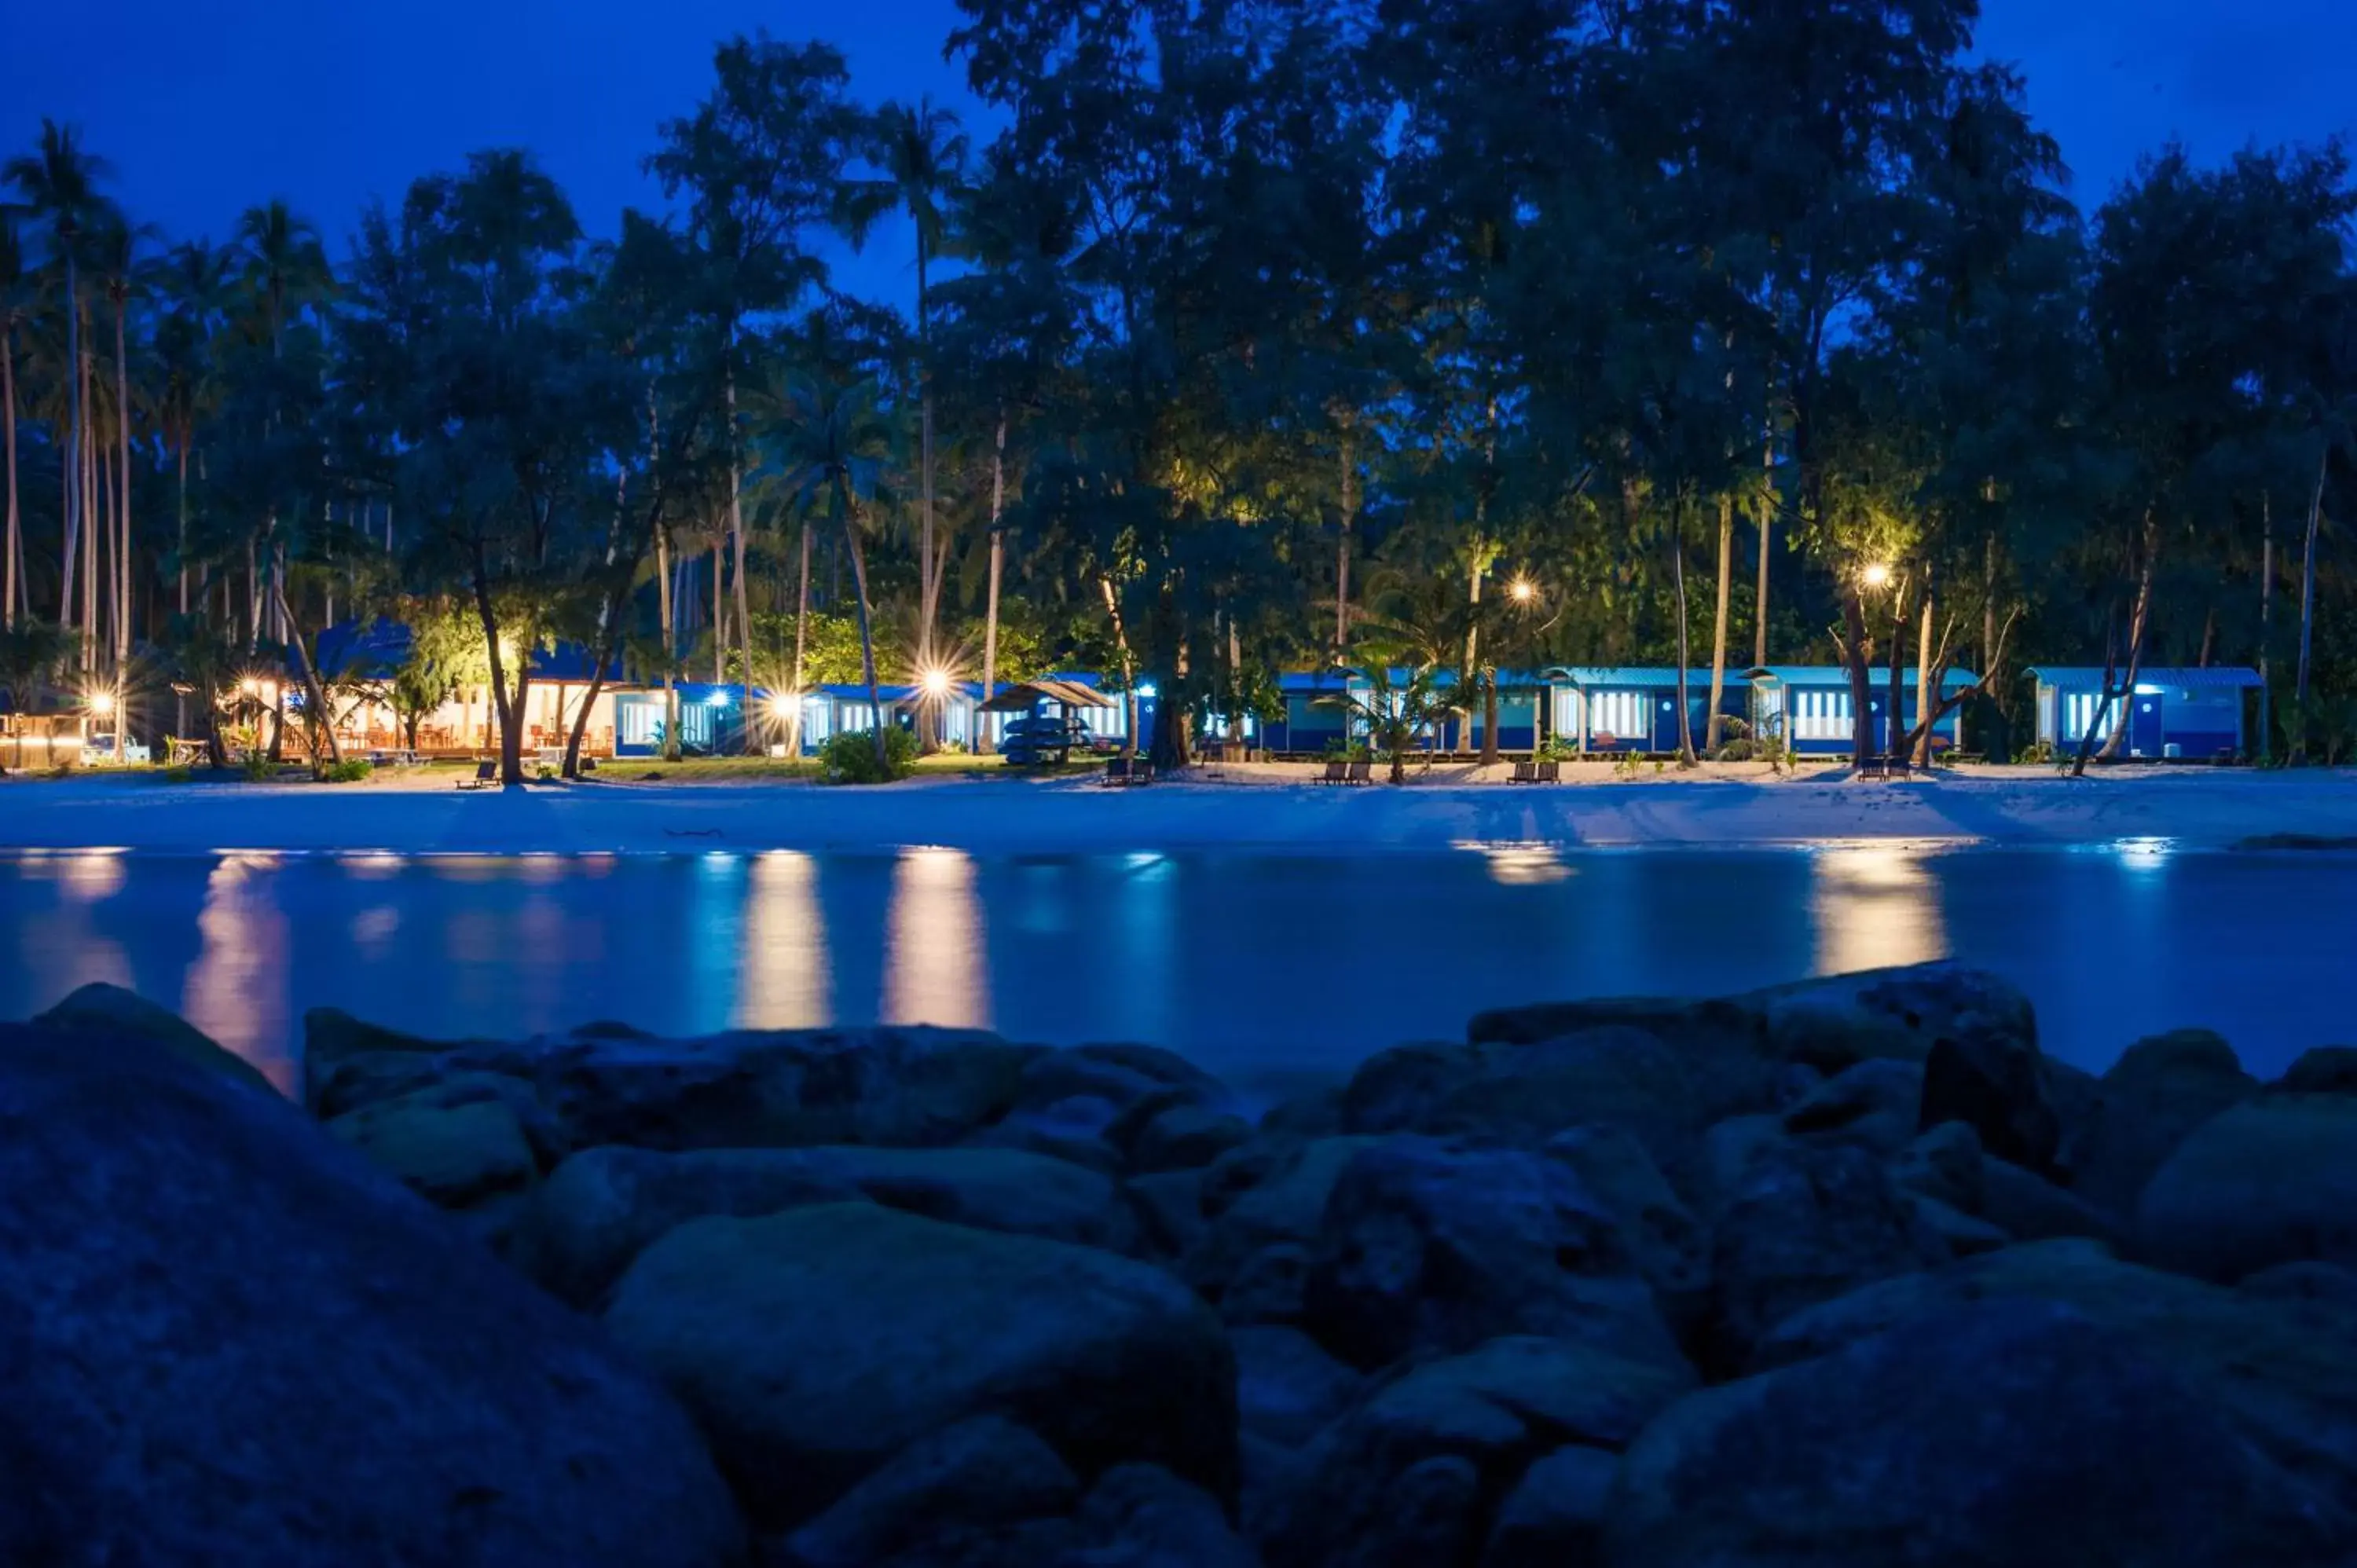 Night, Swimming Pool in Seafar Resort